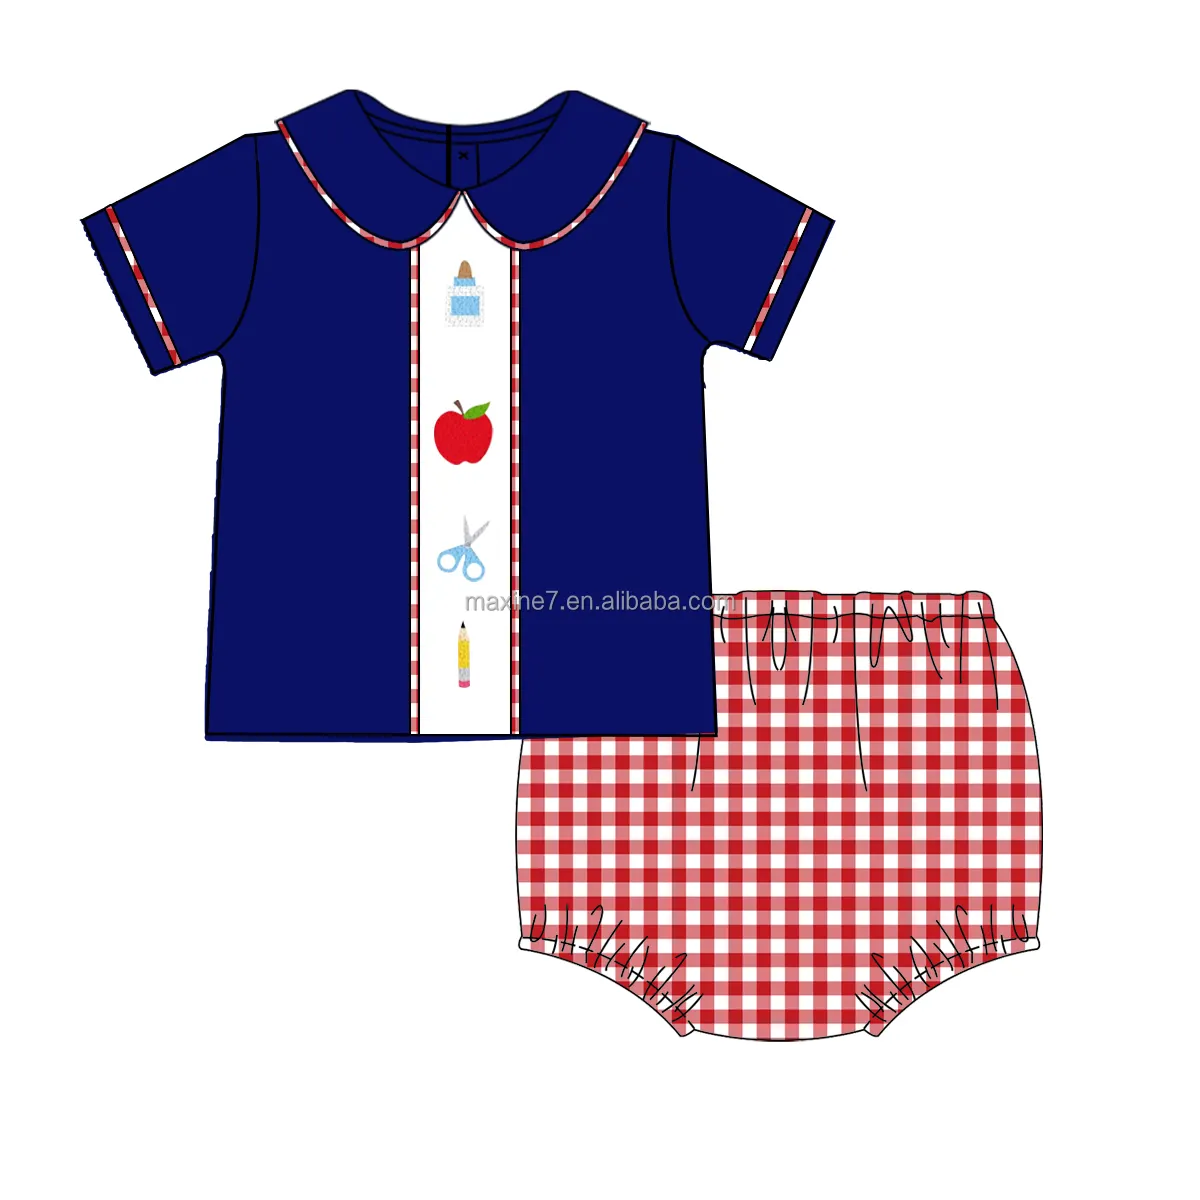 Ropa de verano para niños, camisa para niños de vuelta a la escuela y trajes cortos, conjuntos de ropa con nudo francés para bebés